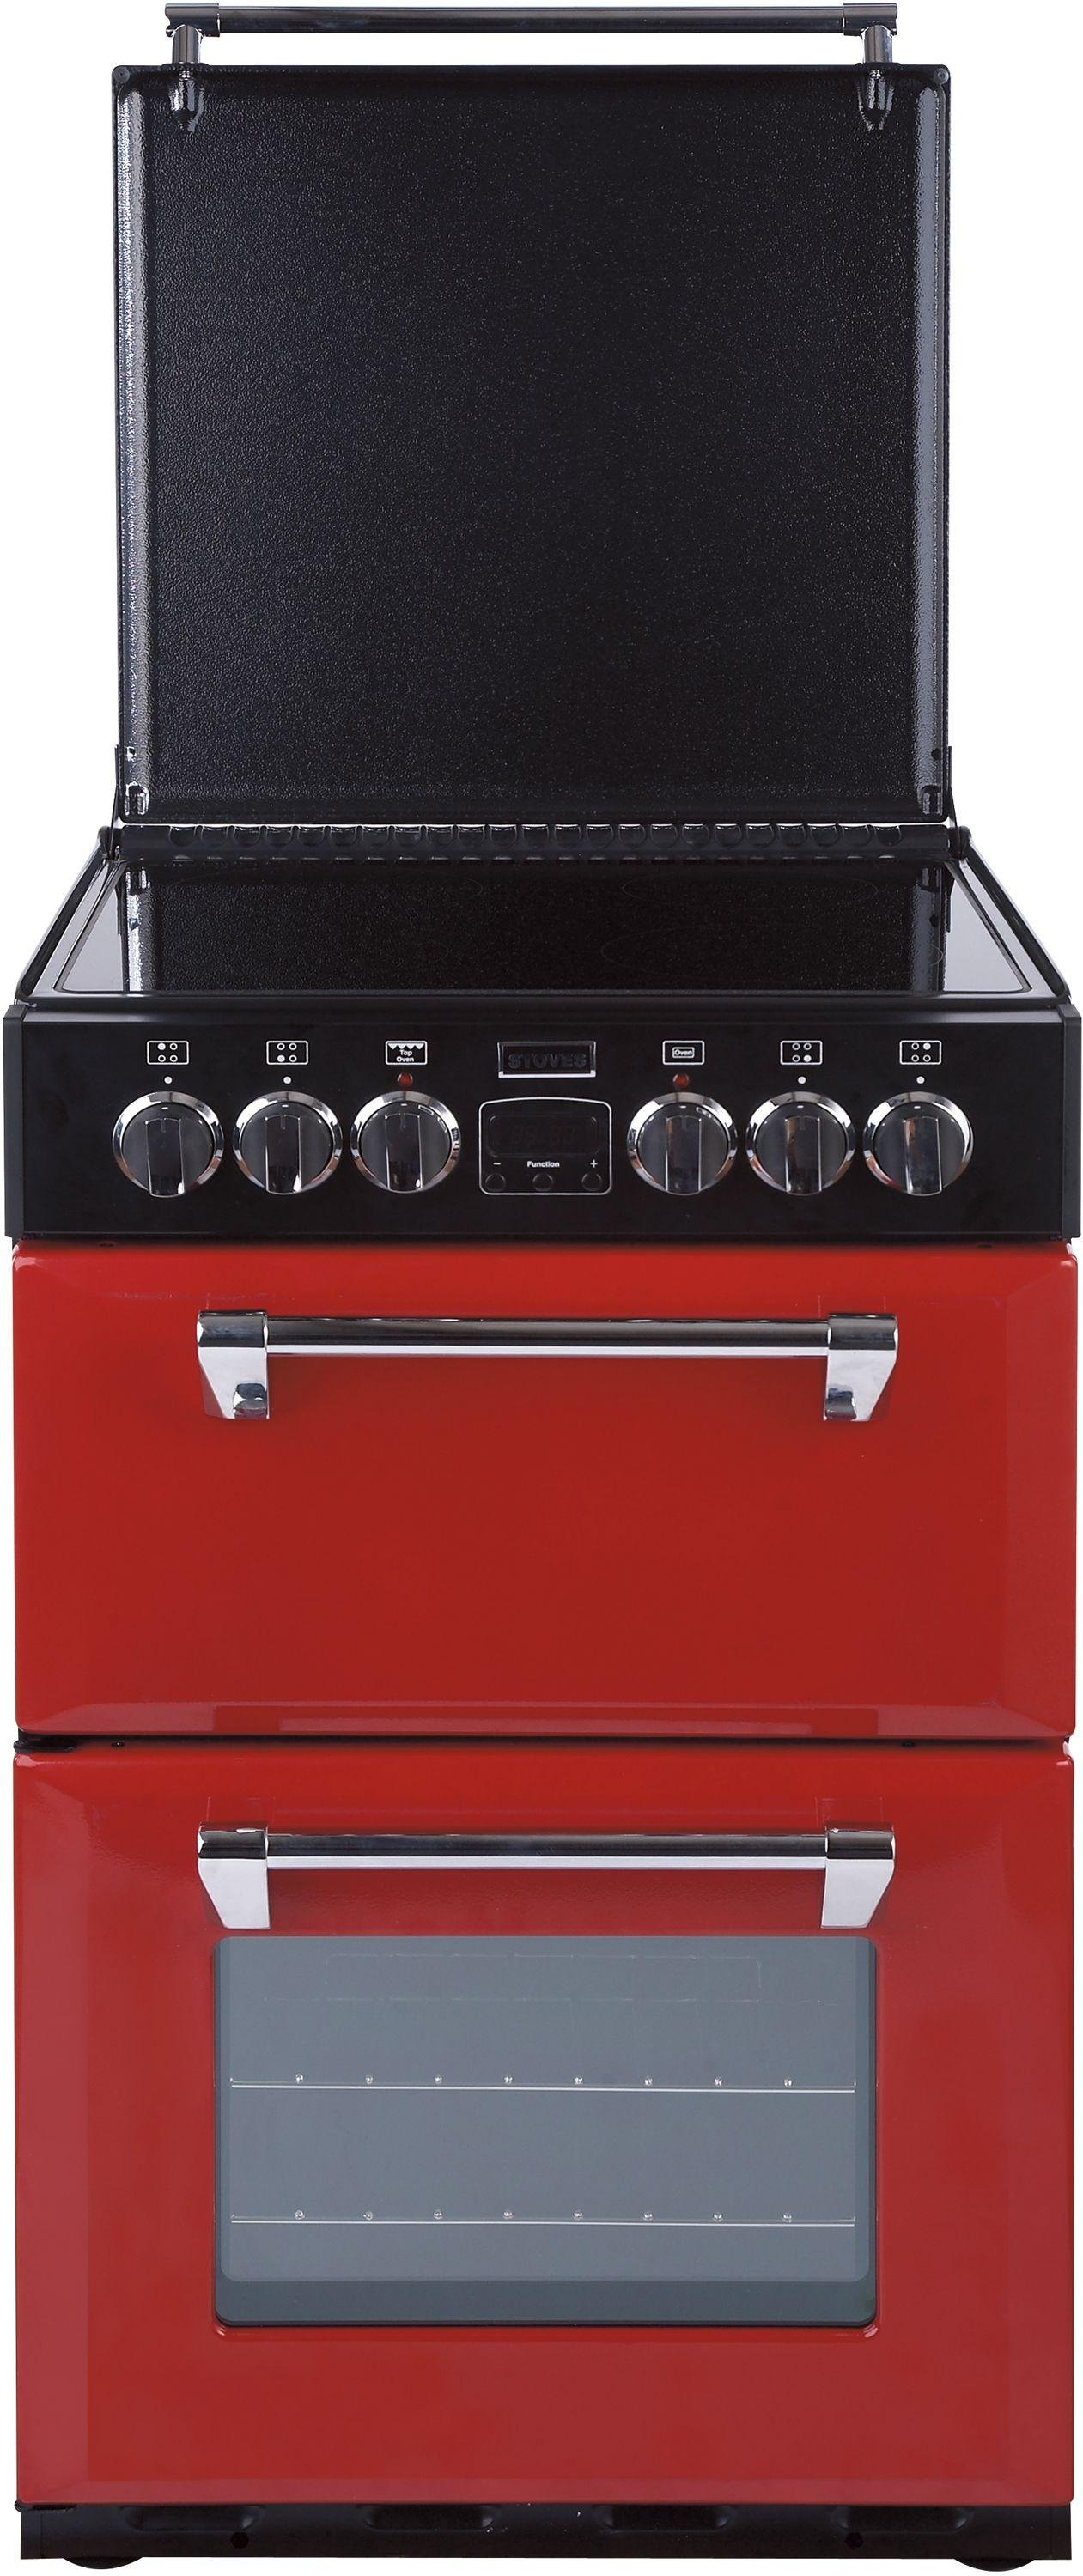 Stoves Richmond 550E 55cm MiniRange Electric Cooker - Red